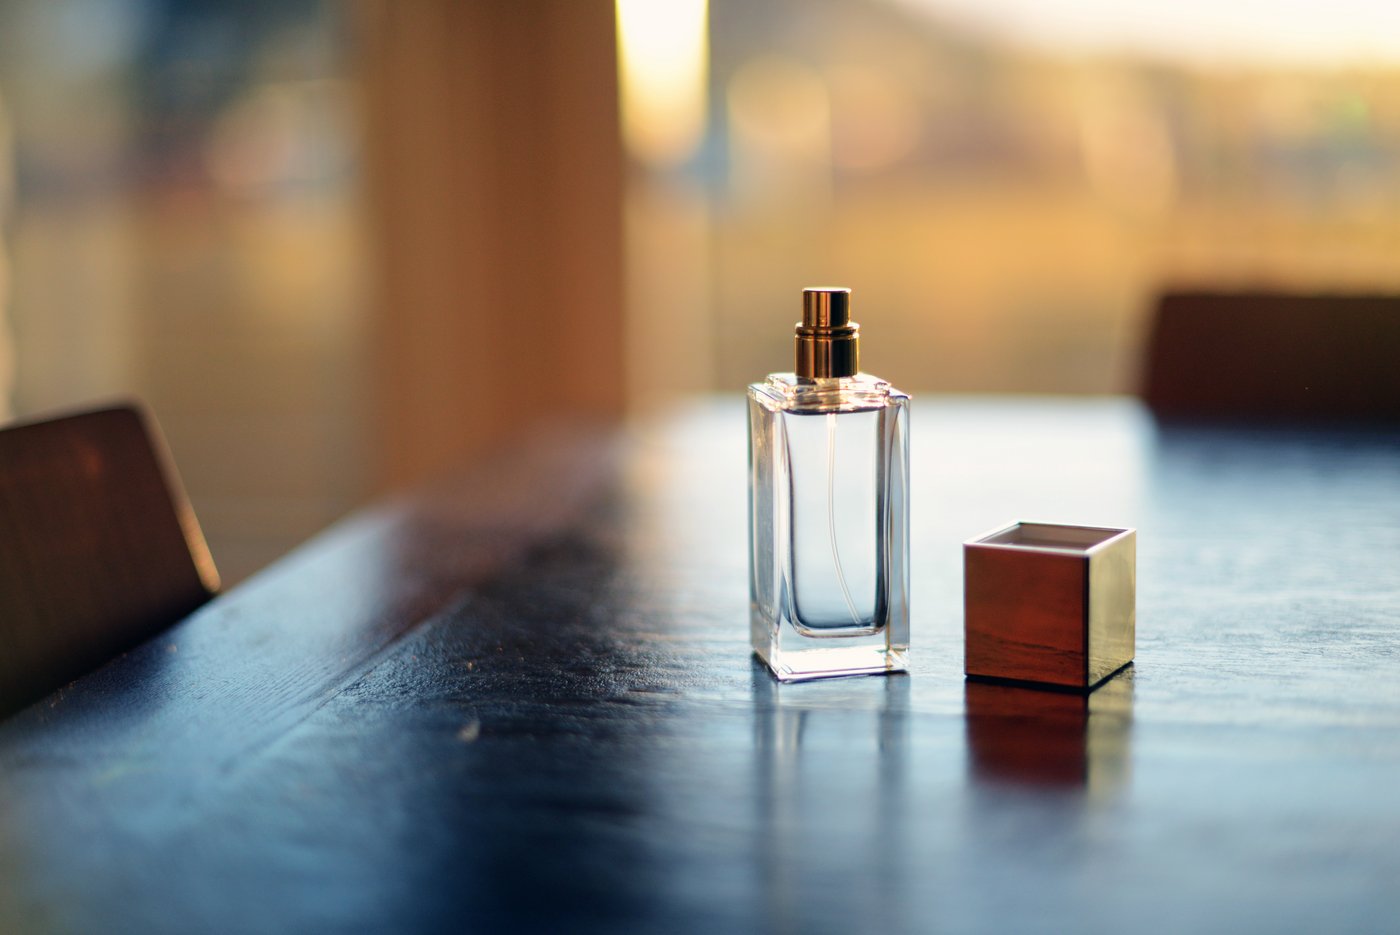 Die 5 Kirsche duftenden Parfums, die Sie lieben werden ❤️